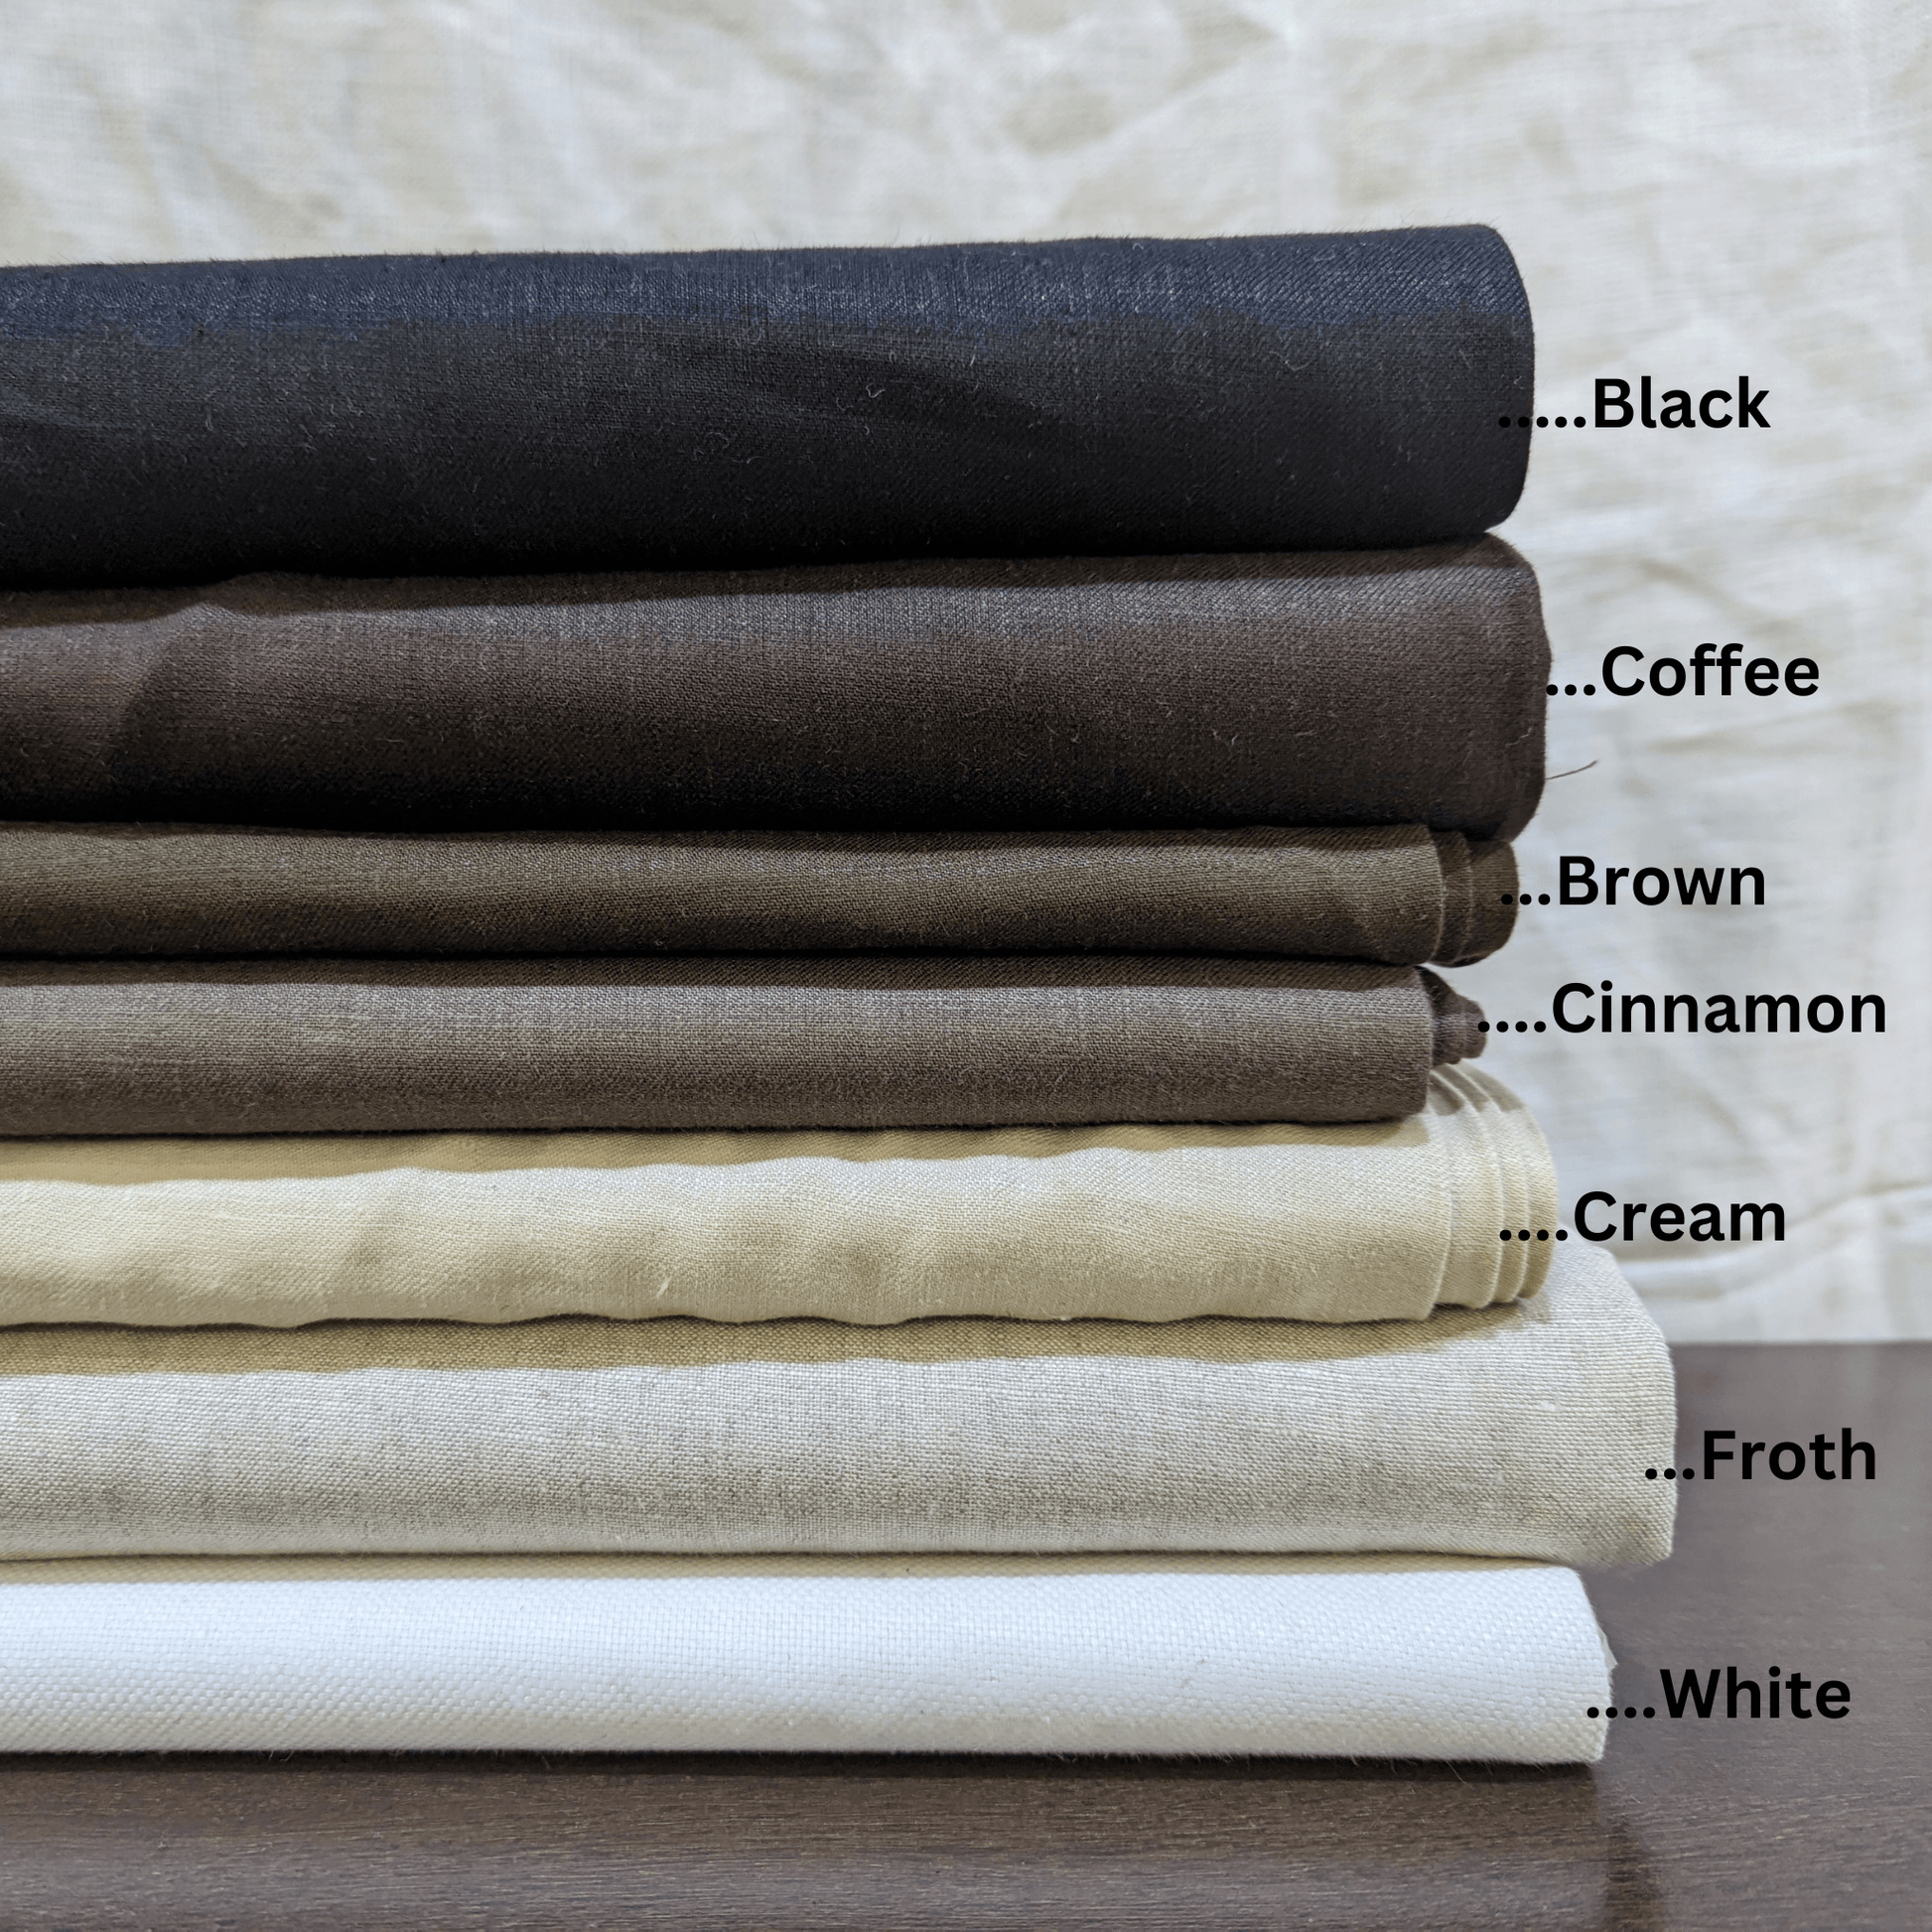 Summer Blue Linen Fabric  100% Pure Linen for clothing - OrganoLinen